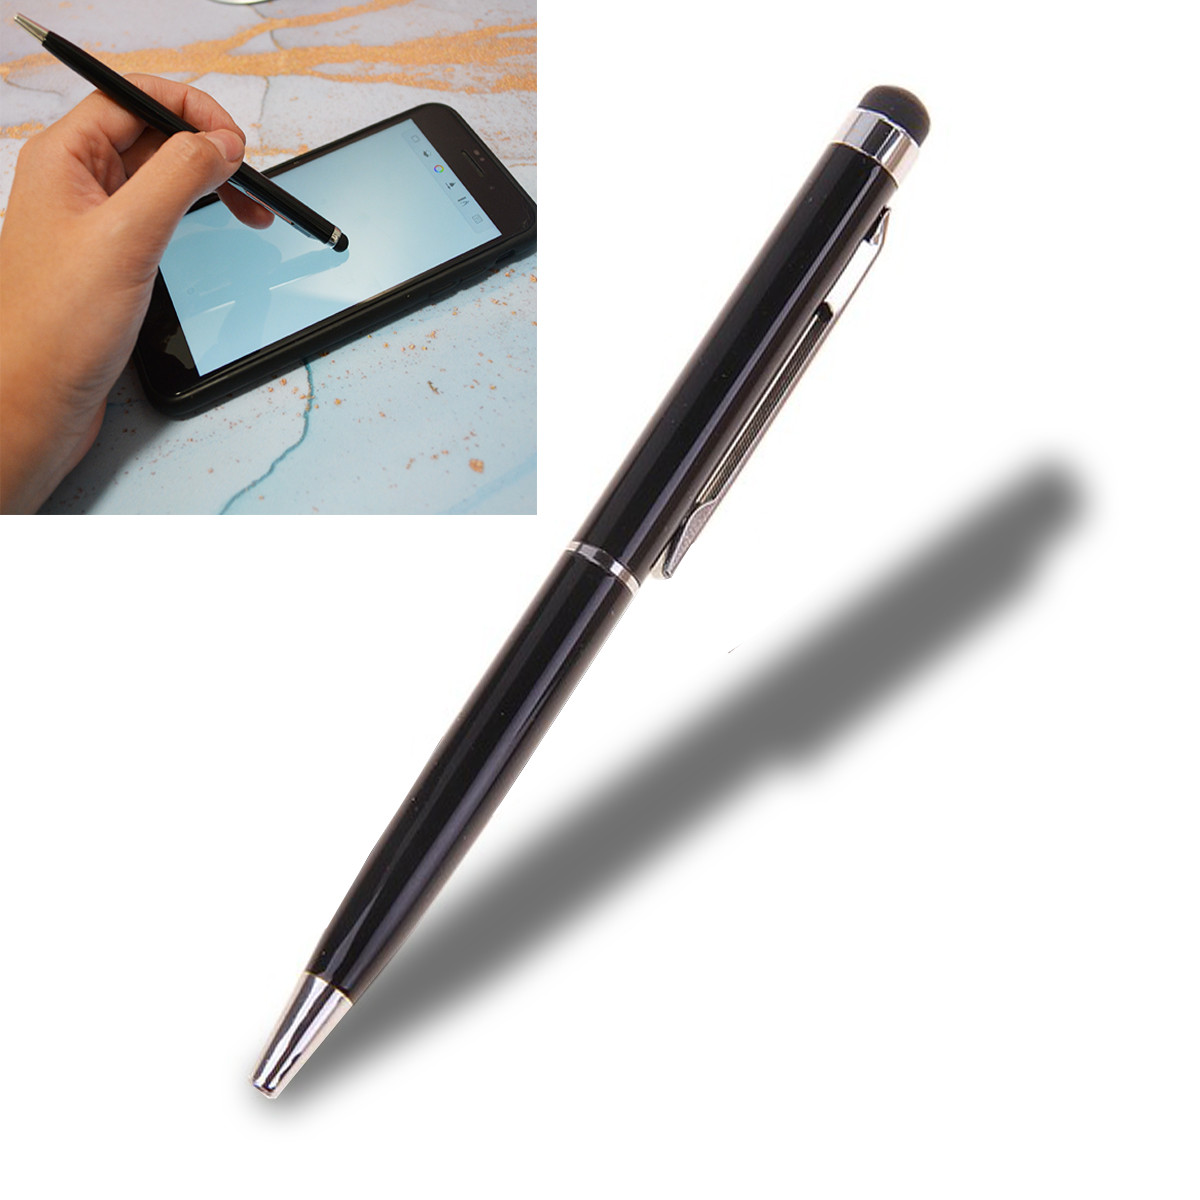 Стилус ручка GSMIN D8 универсальный (Розовый)